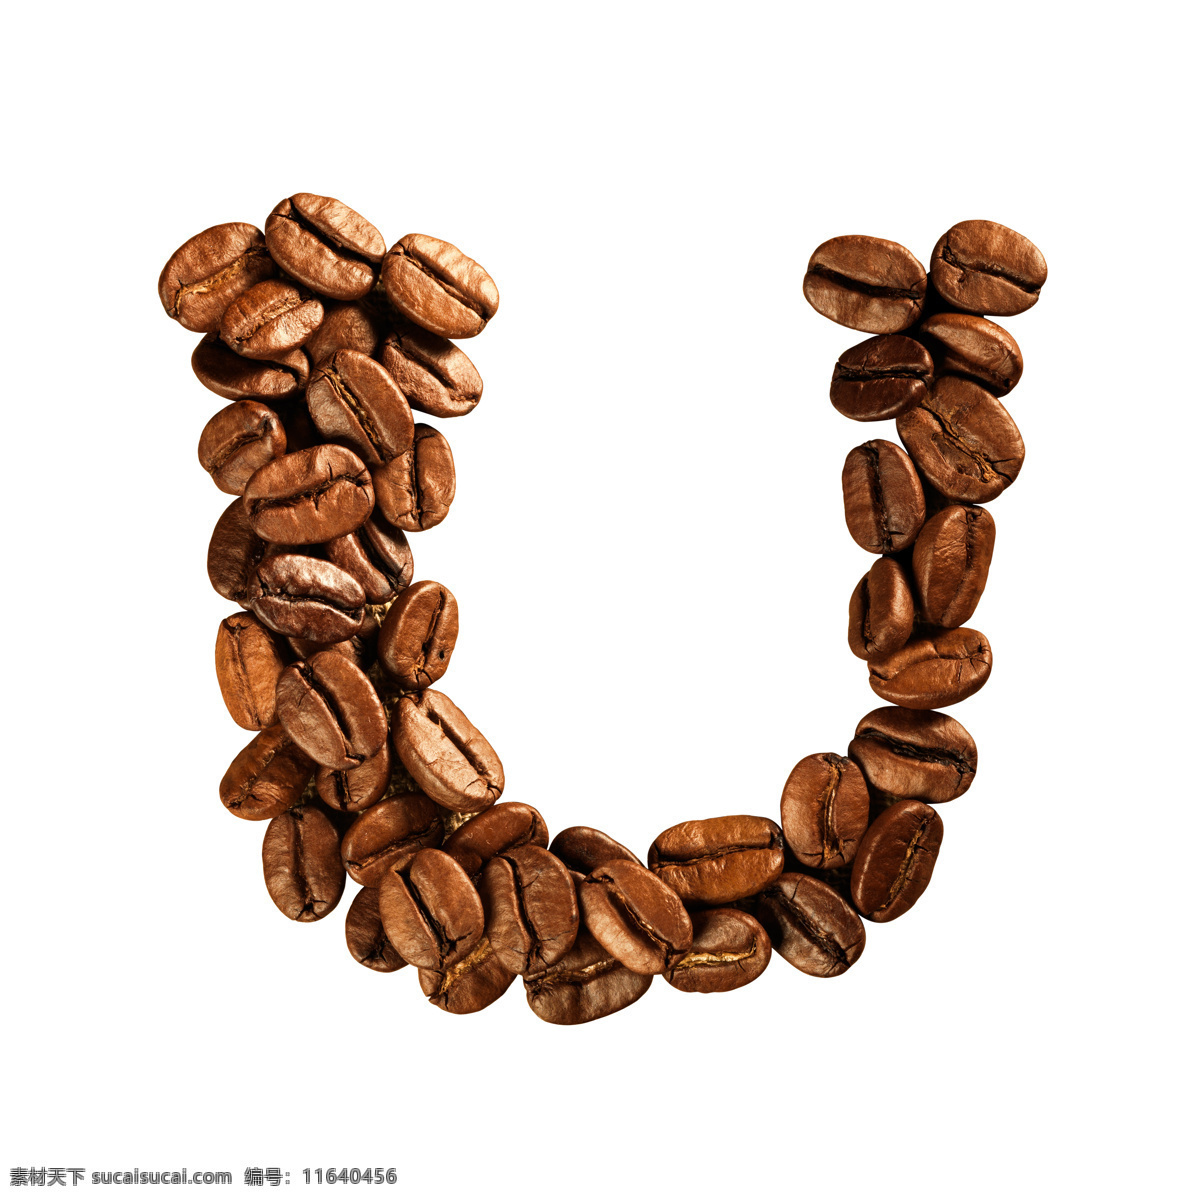 咖啡豆 组成 字母 u 咖啡 文字 艺术字体 书画文字 文化艺术 白色